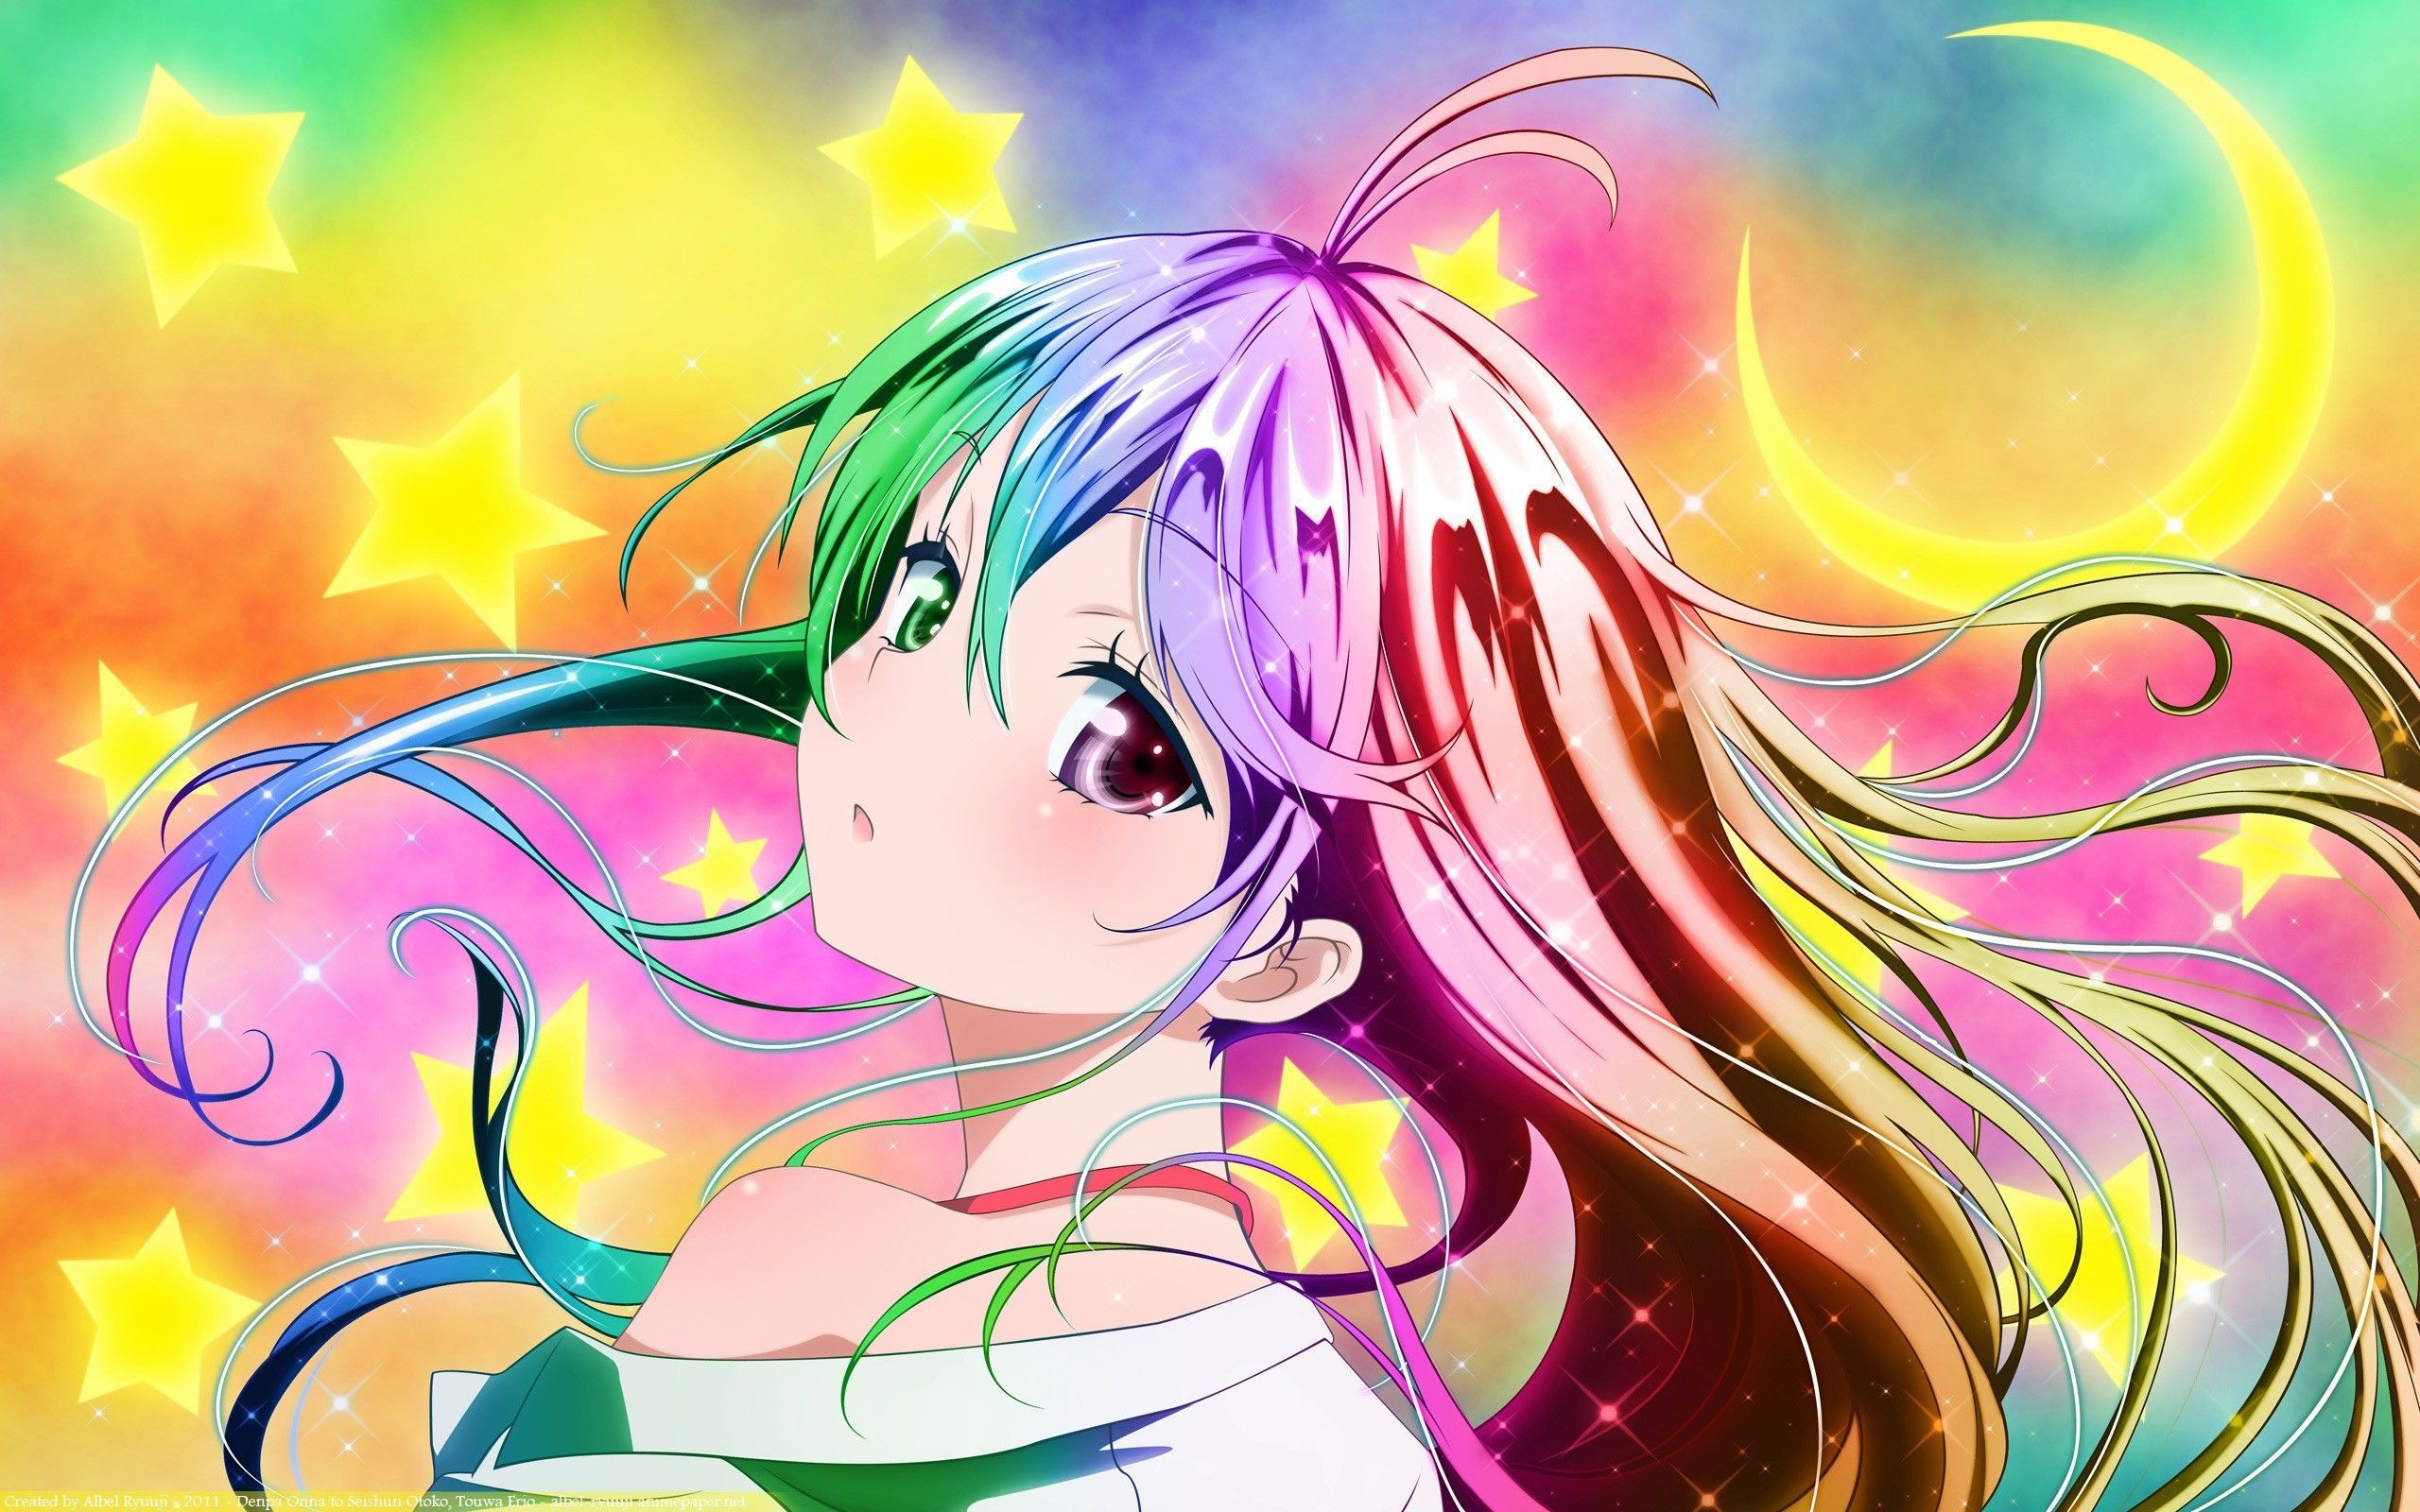 Rainbow Anime Hair